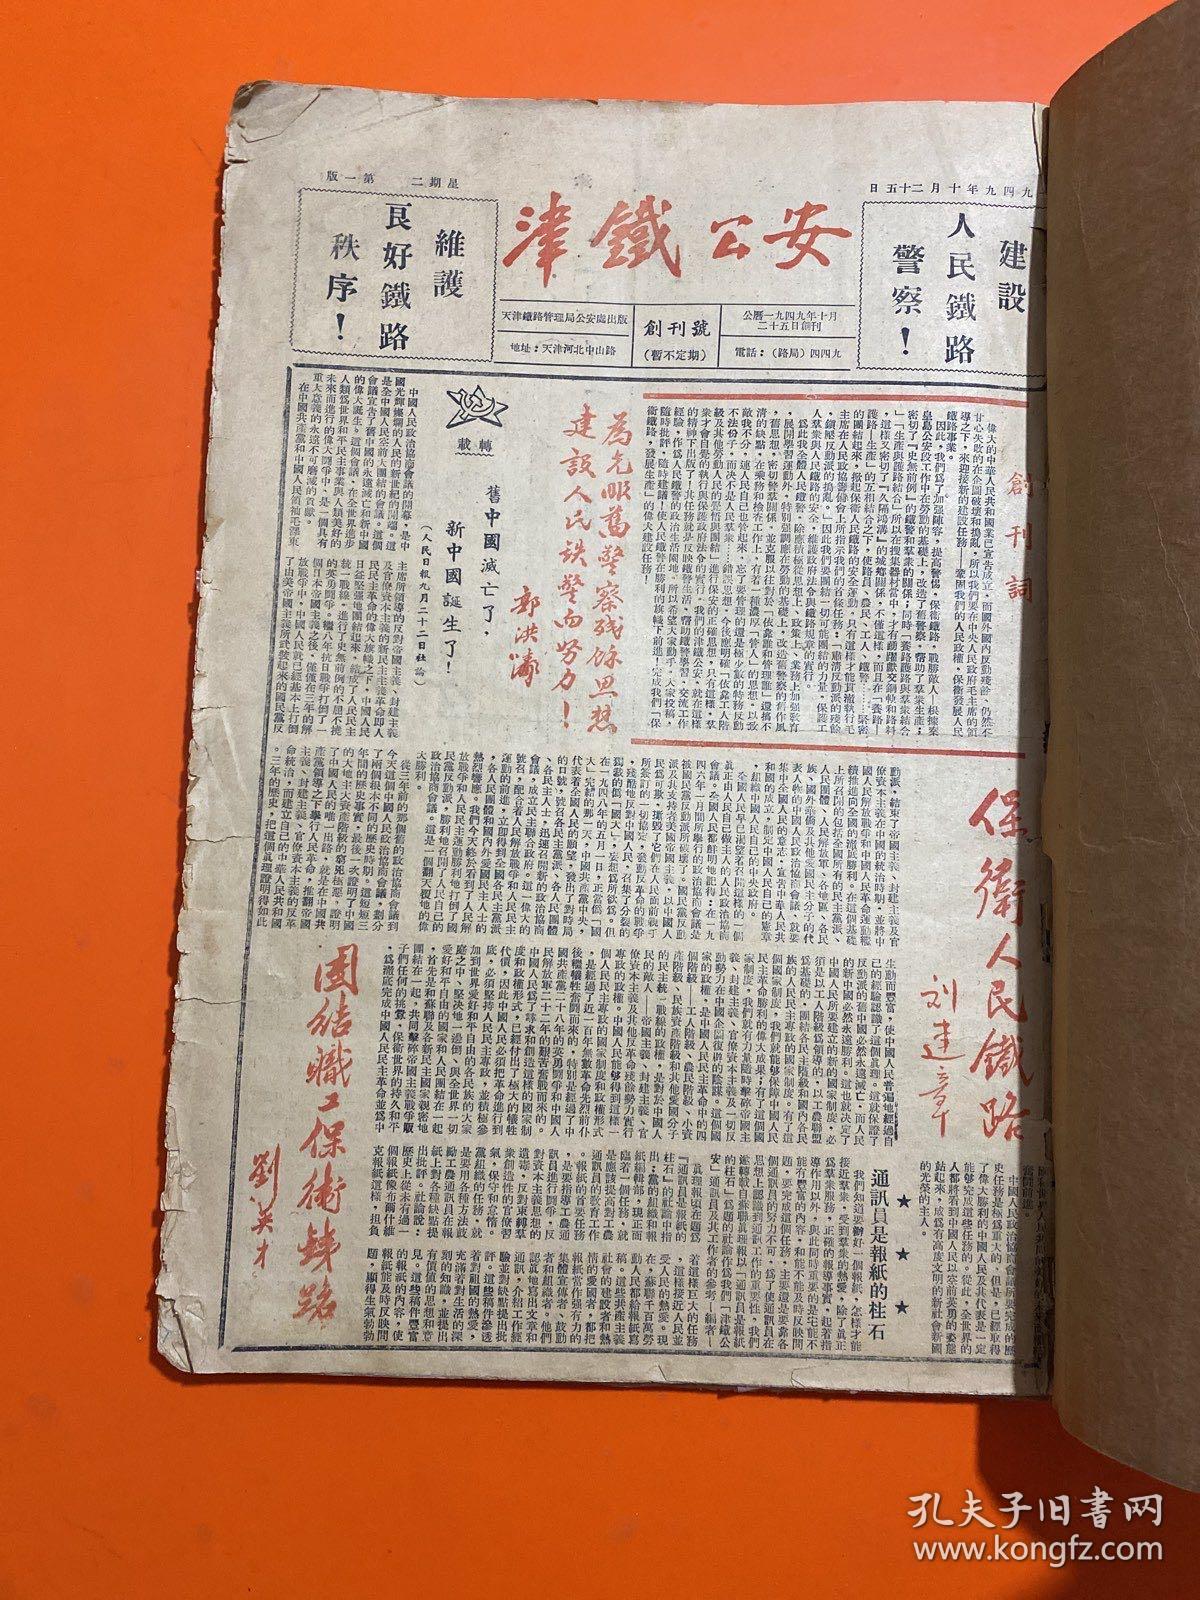 津铁公安合订本1949年10月25日 自创刊号至第五十二期  8开合订本